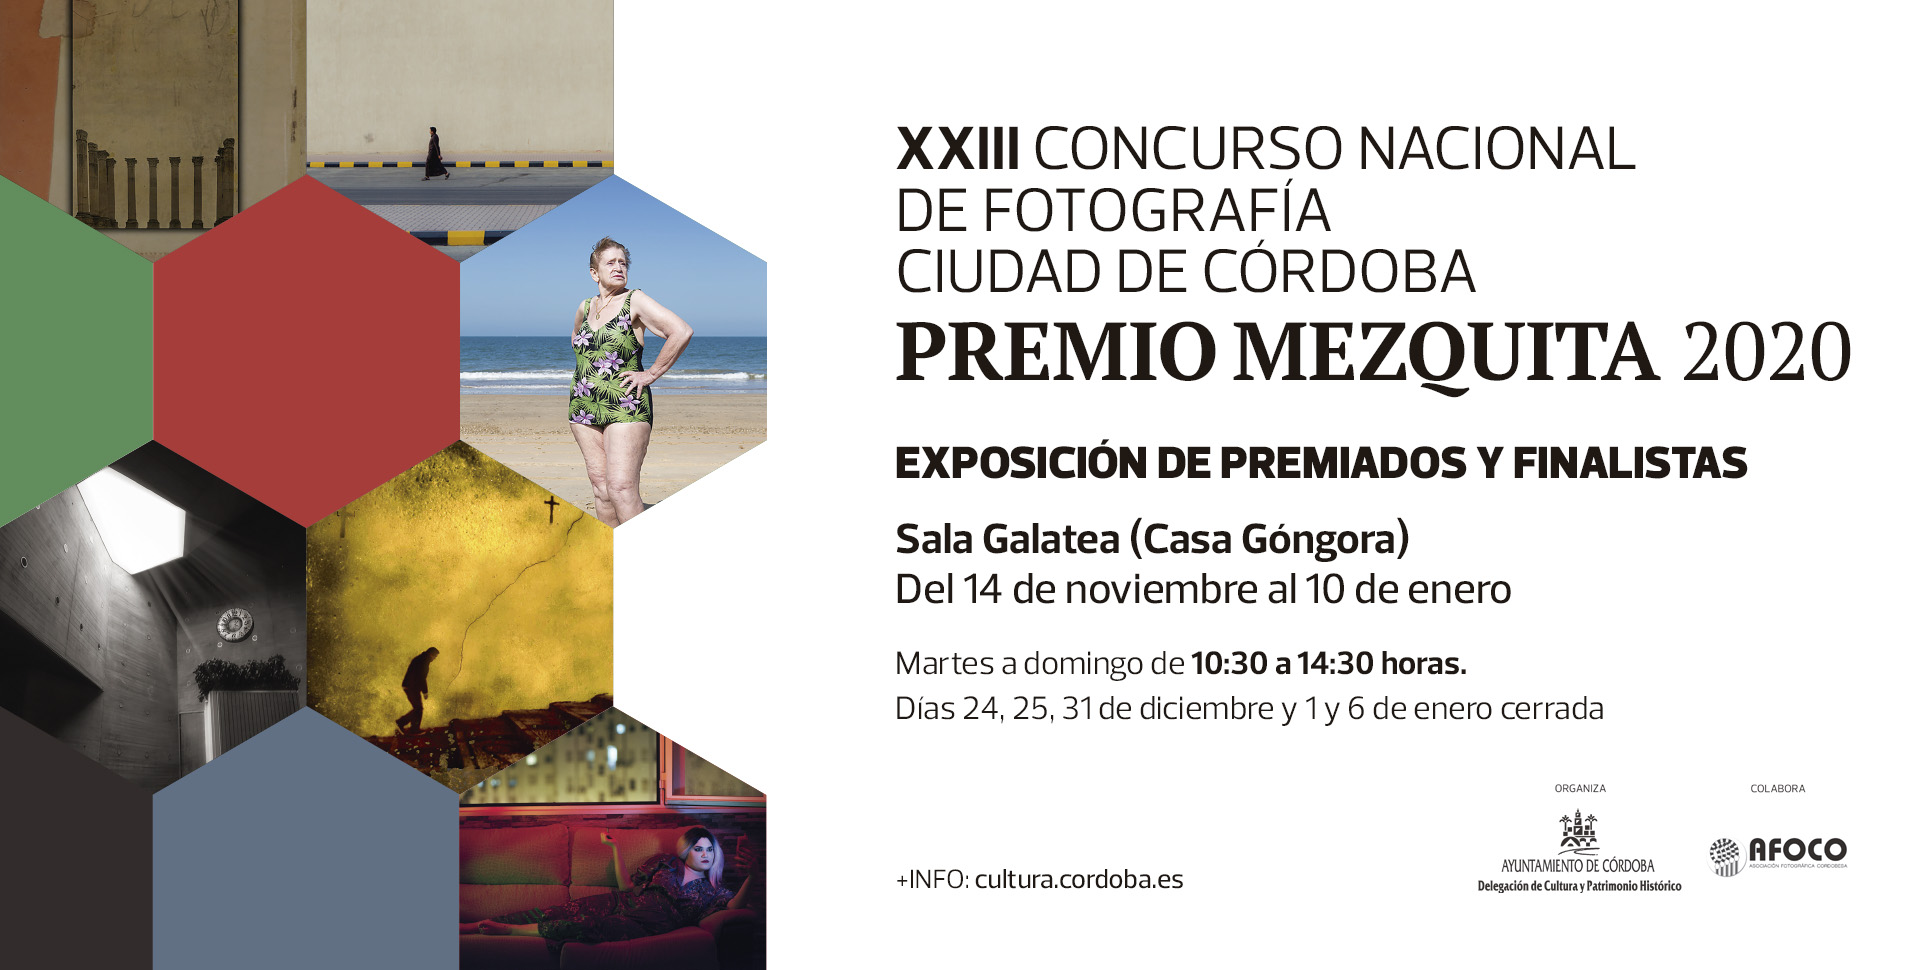 XXIII Concurso Nacional de Fotografía Ciudad de Córdoba. Premio Mezquita 2020.